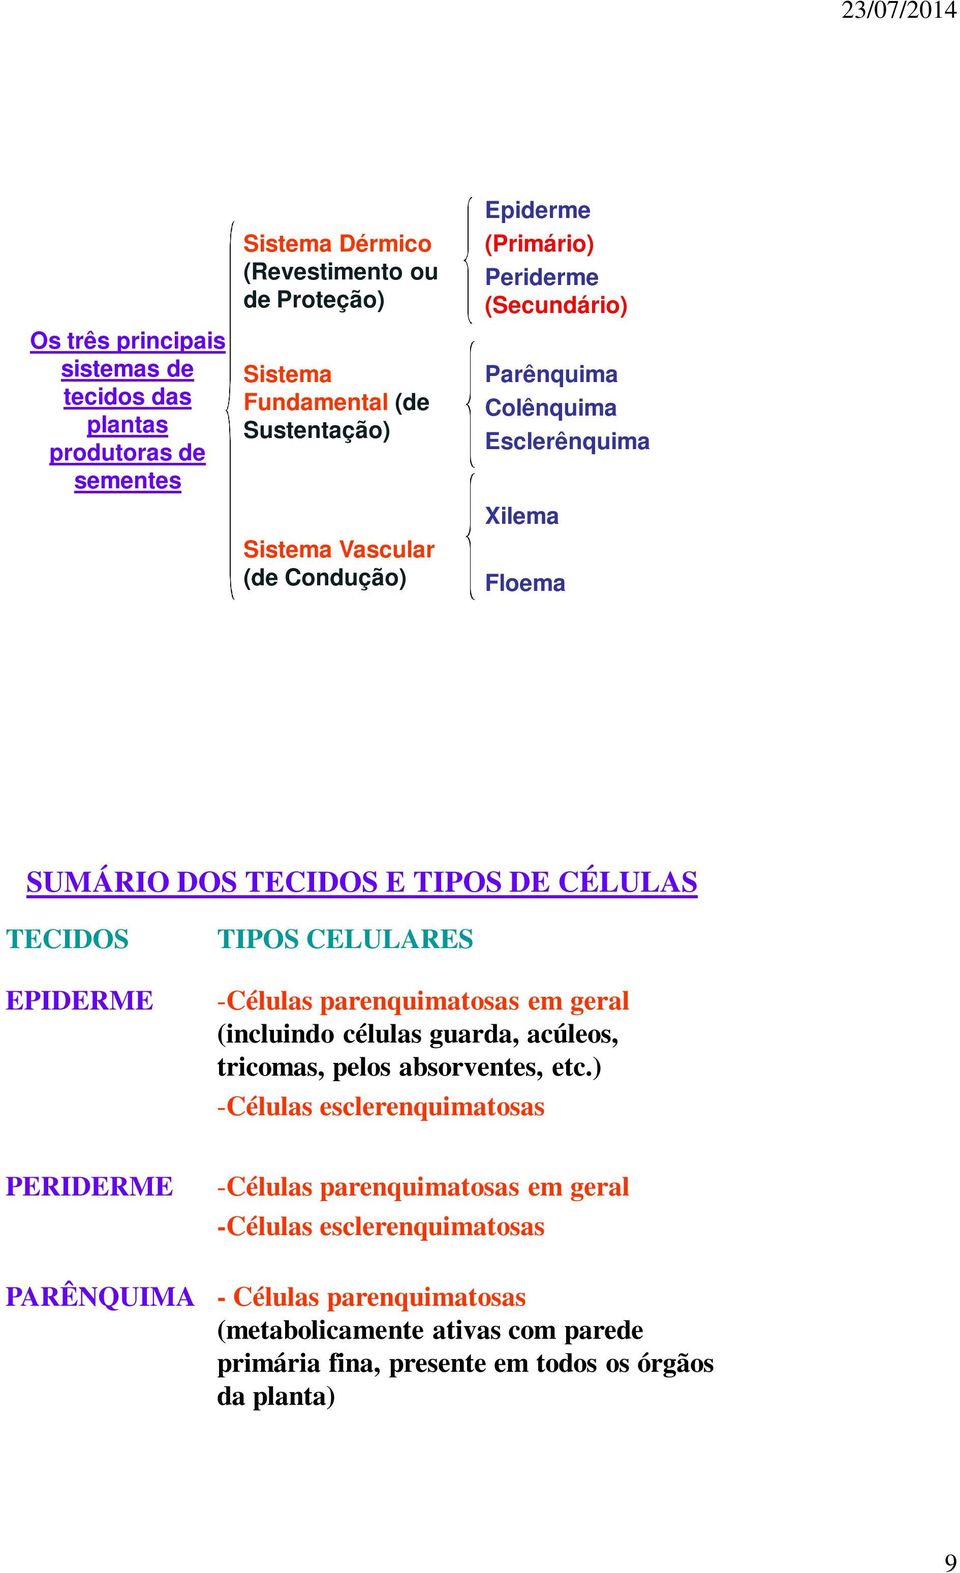 TIPOS CELULARES -Células parenquimatosas em geral (incluindo células guarda, acúleos, tricomas, pelos absorventes, etc.